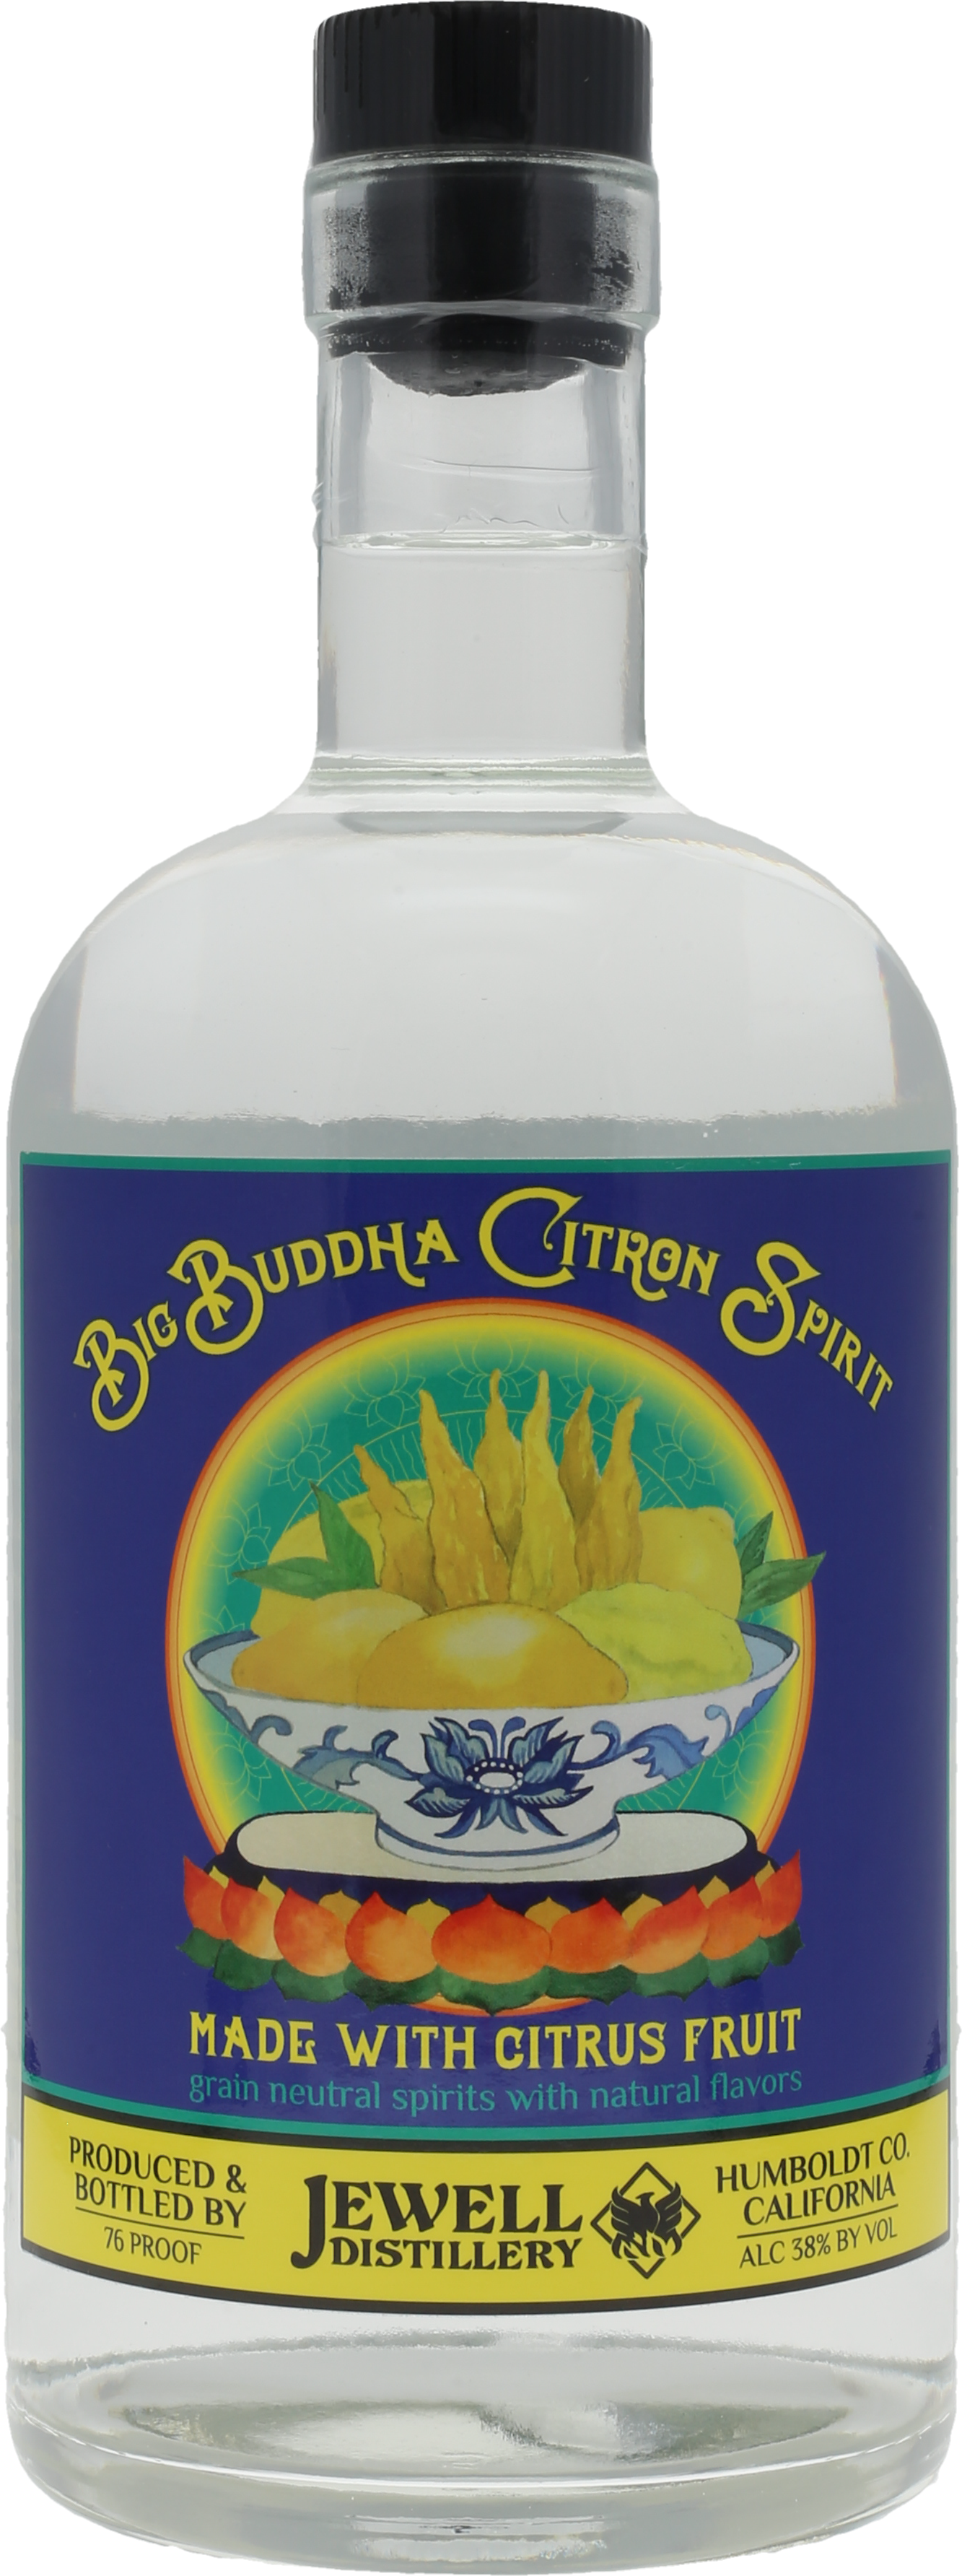 Big Buddha Citron Vodka